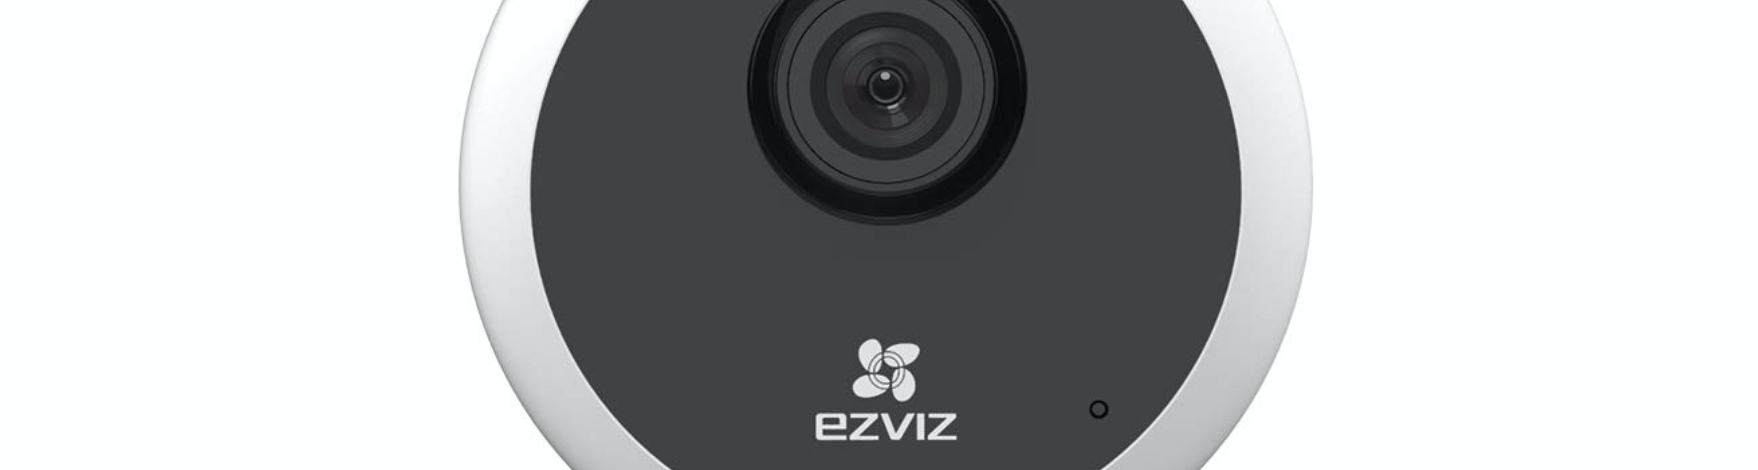 EZVIZ C1C 1080p